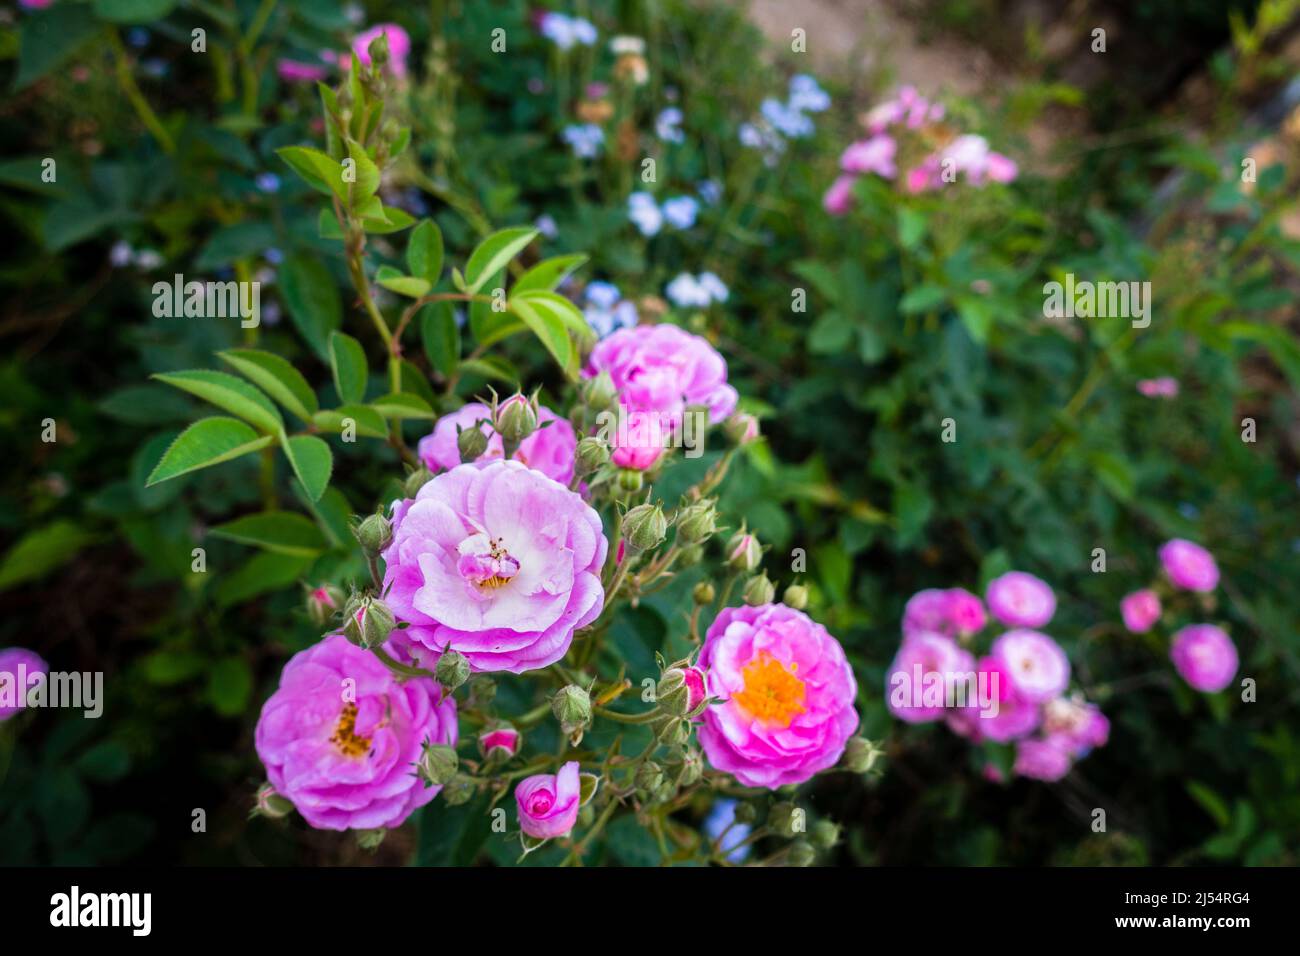 Als Nahaufnahme von rosa Gartenrosen sind Gartenrosen überwiegend Hybridrosen, die als Zierpflanzen in privaten oder öffentlichen Gärten angebaut werden. Stockfoto